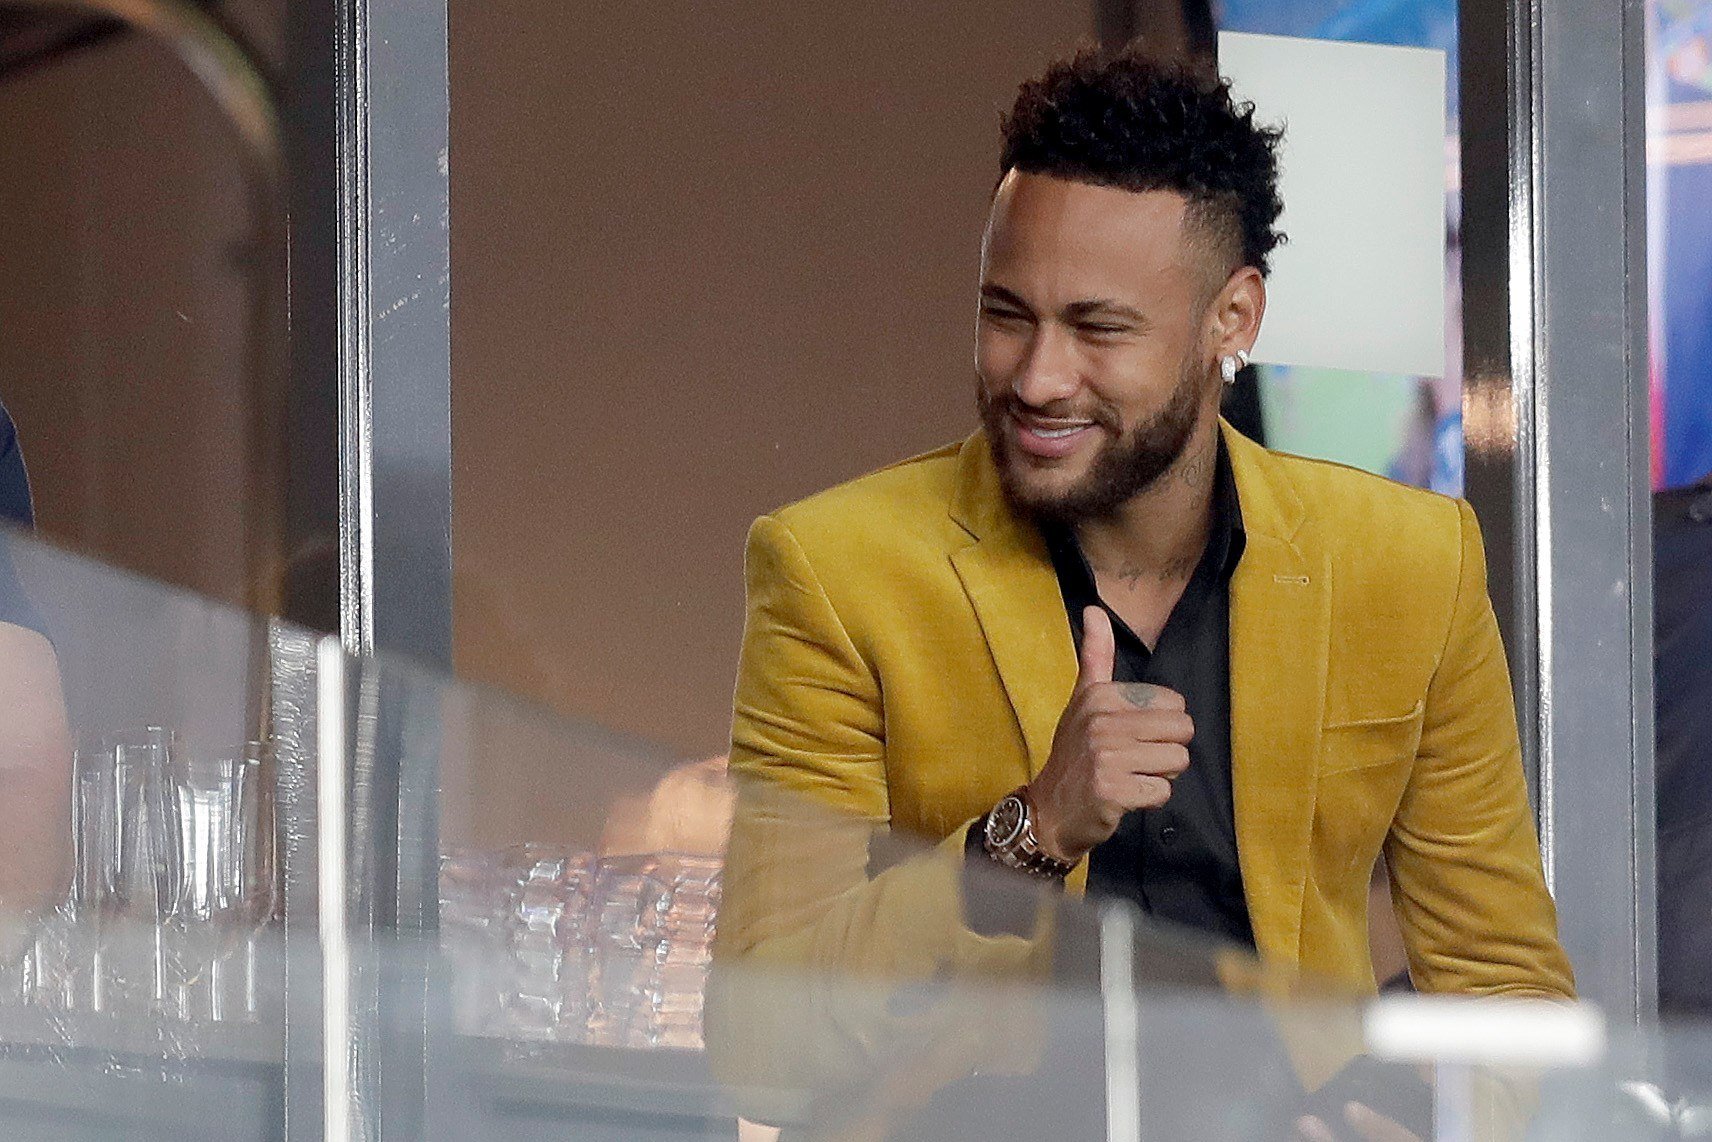 Les dues exigències de Neymar en l'última entrevista al Brasil